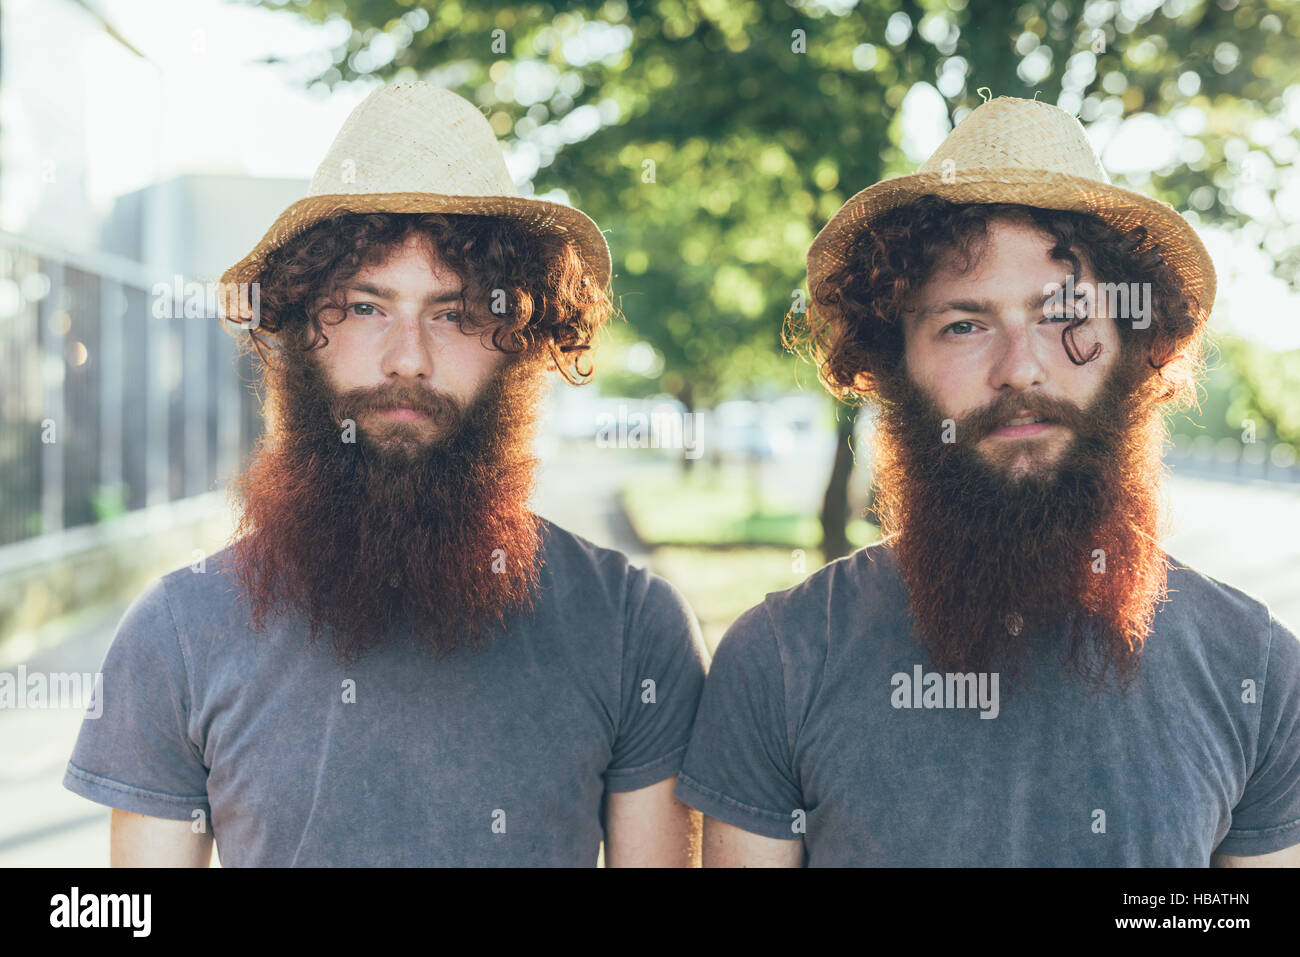 Retrato de gemelos idénticos hipster macho usando sombreros de paja en la acera Foto de stock